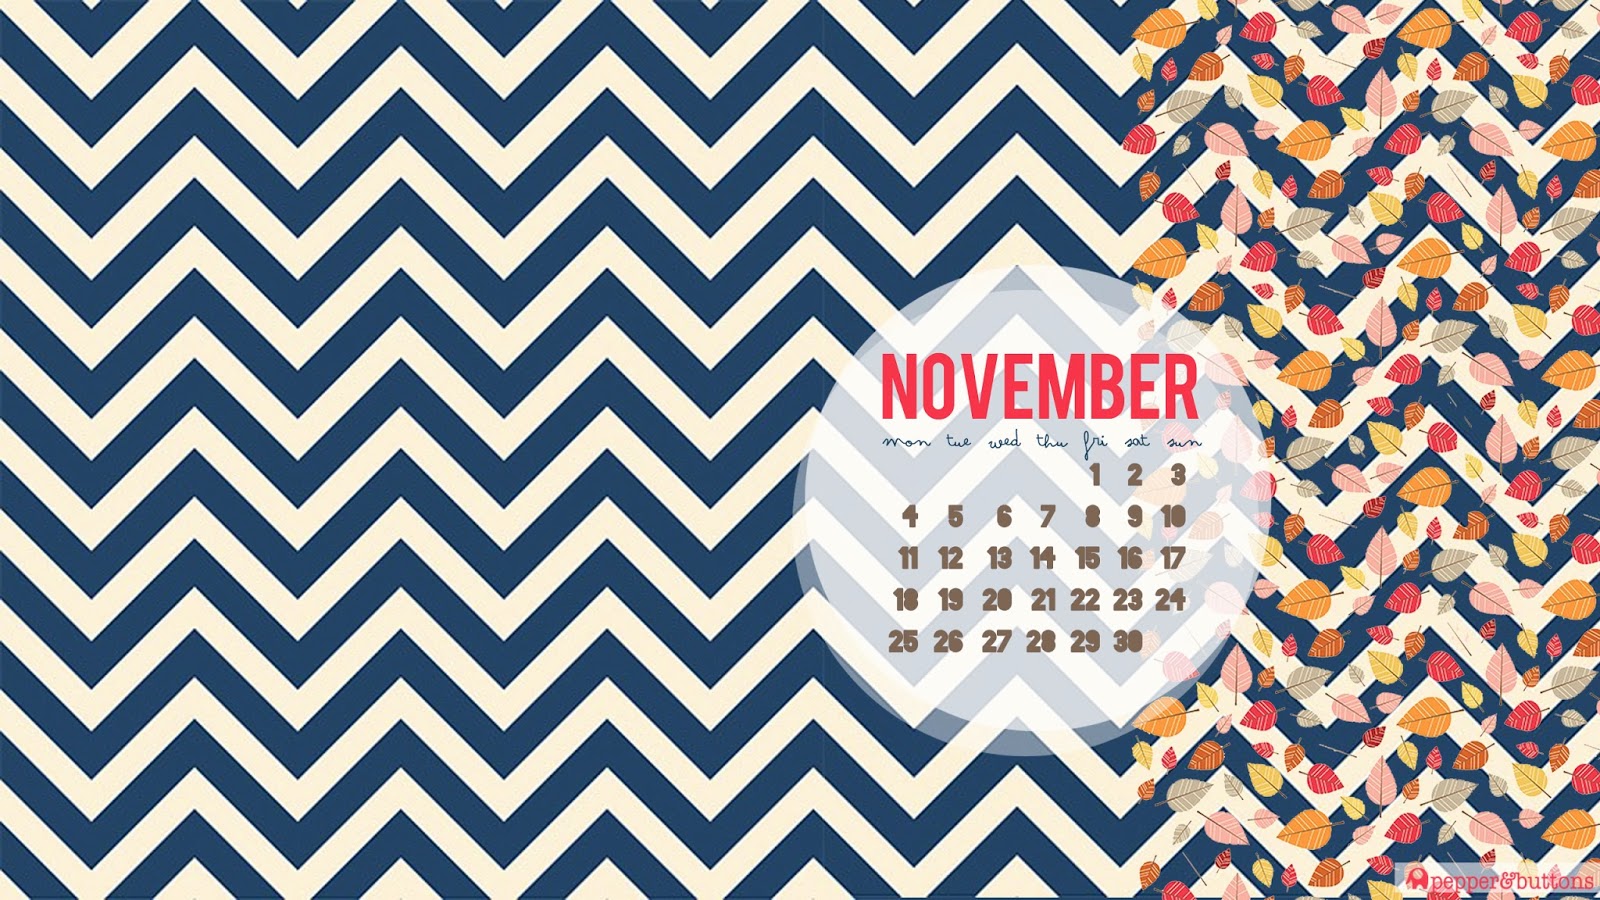 Pepper And Buttons November Desktop Calendar